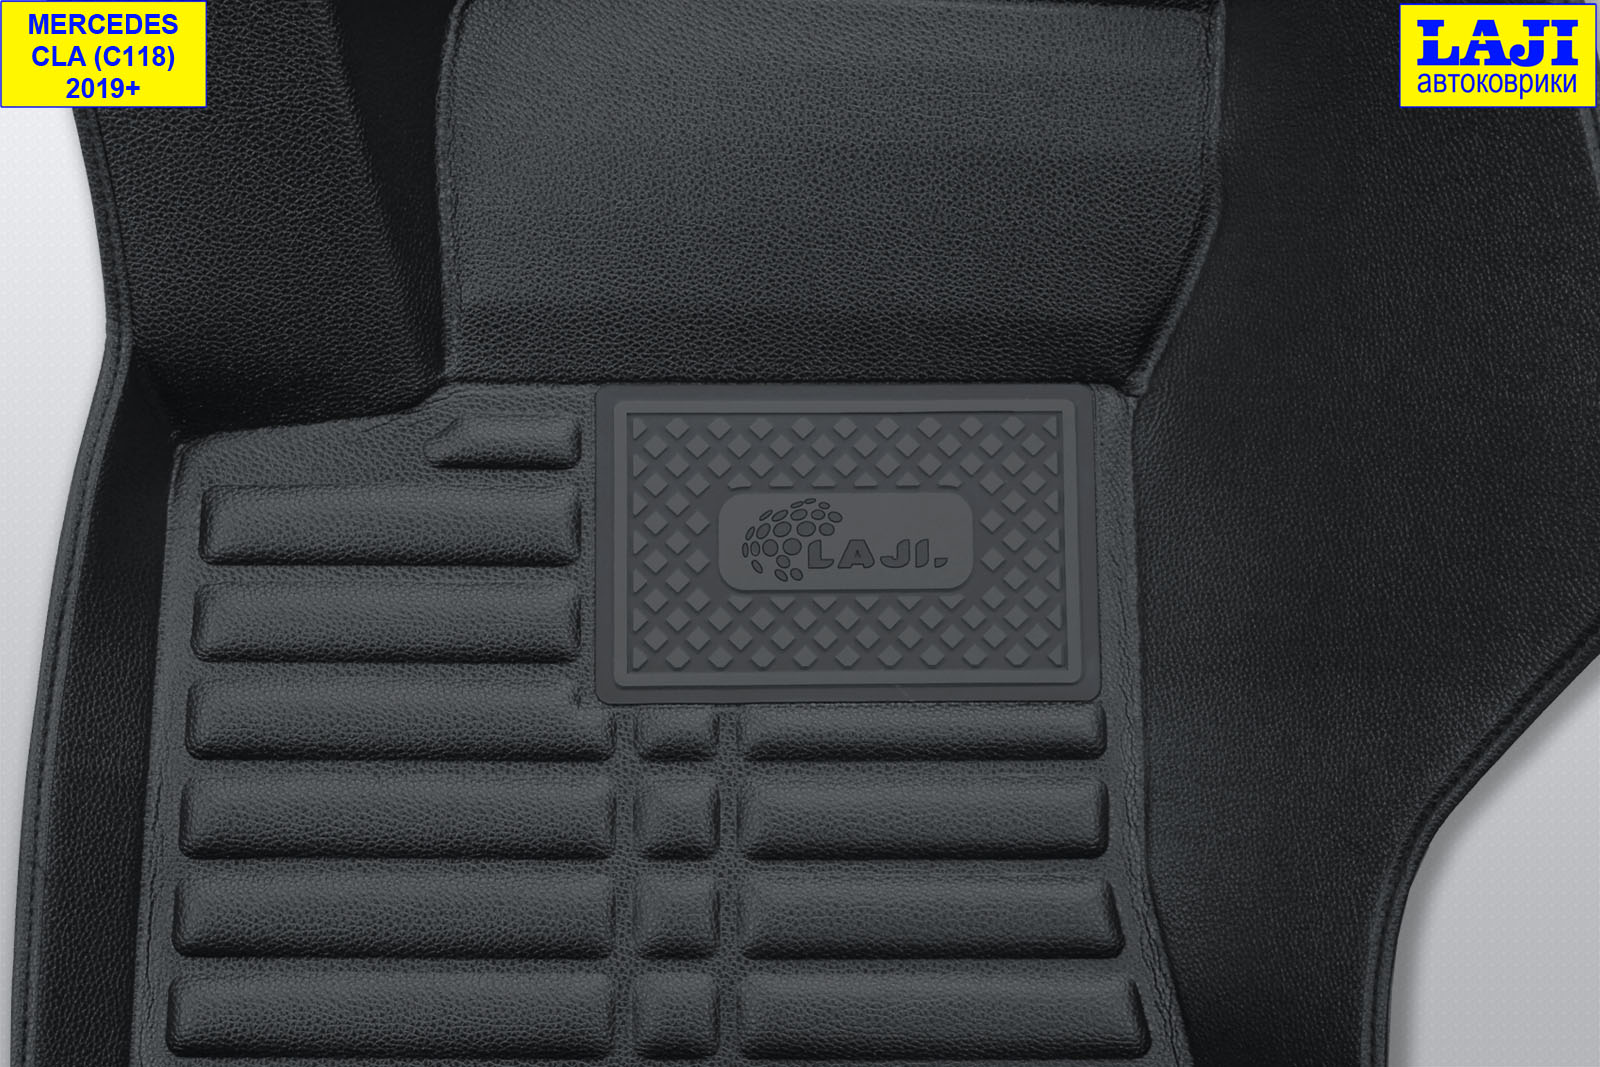 5D коврики в салон Mercedes CLA C118 2019-н.в. 7